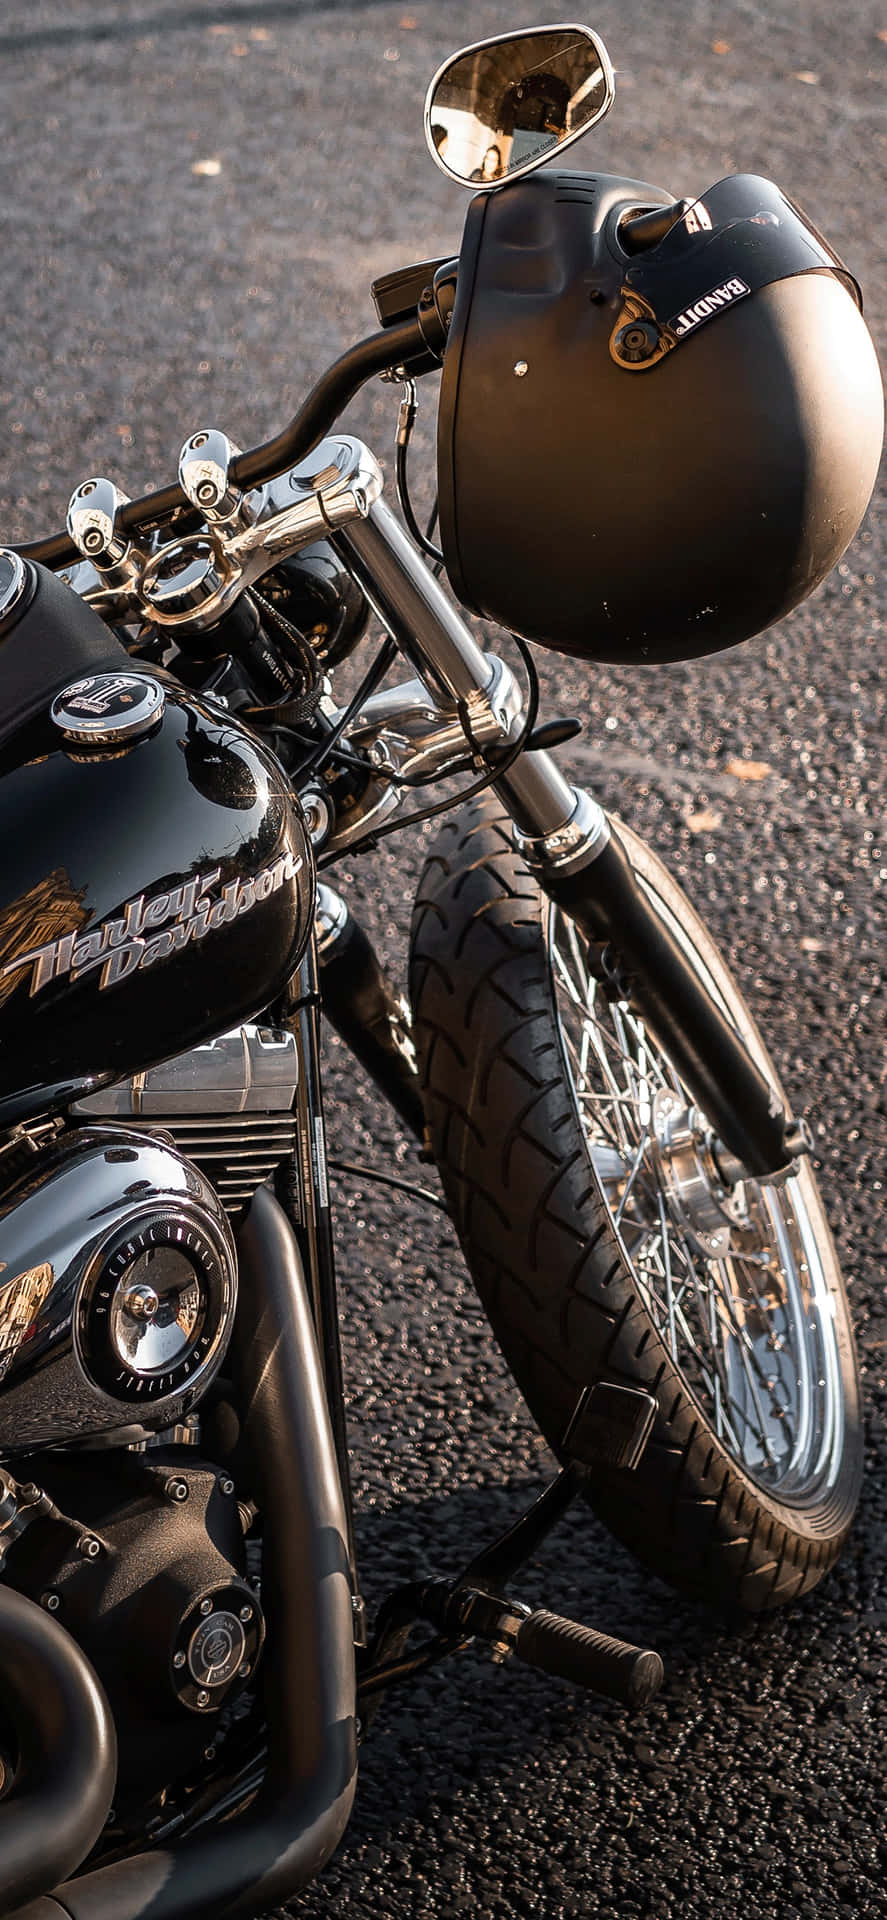 Harley Davidson Motor And Helmet Background